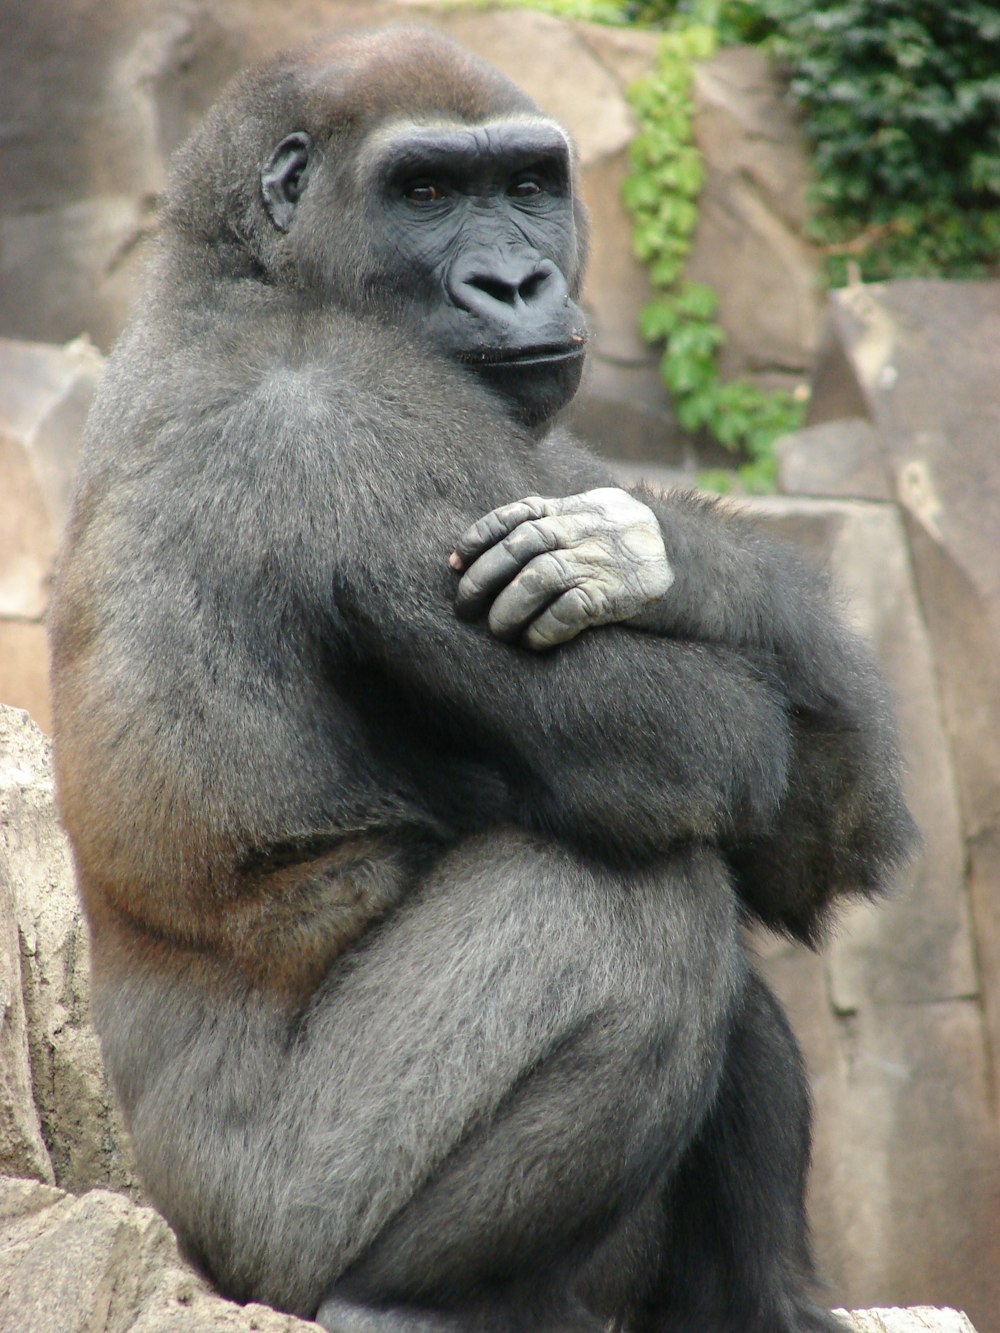 black gorilla sitting on brown wooden floor during daytime